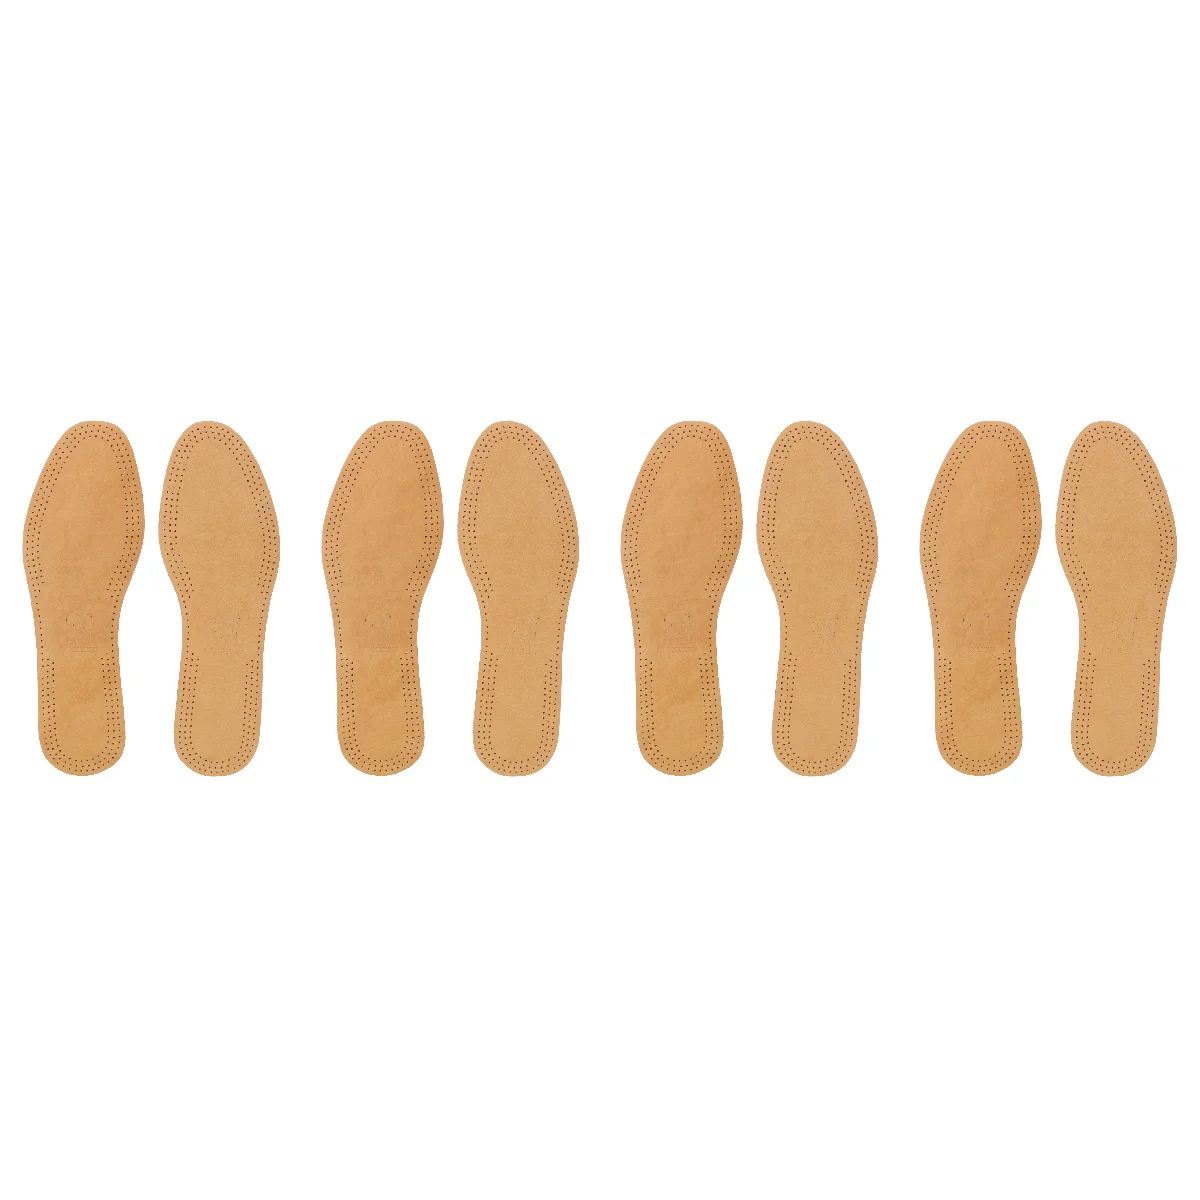 

Дышащие дезодорирующие стельки, впитывающие пот, сменные вкладыши для обуви, 4 шт., размеры 43-44 (коричневые)